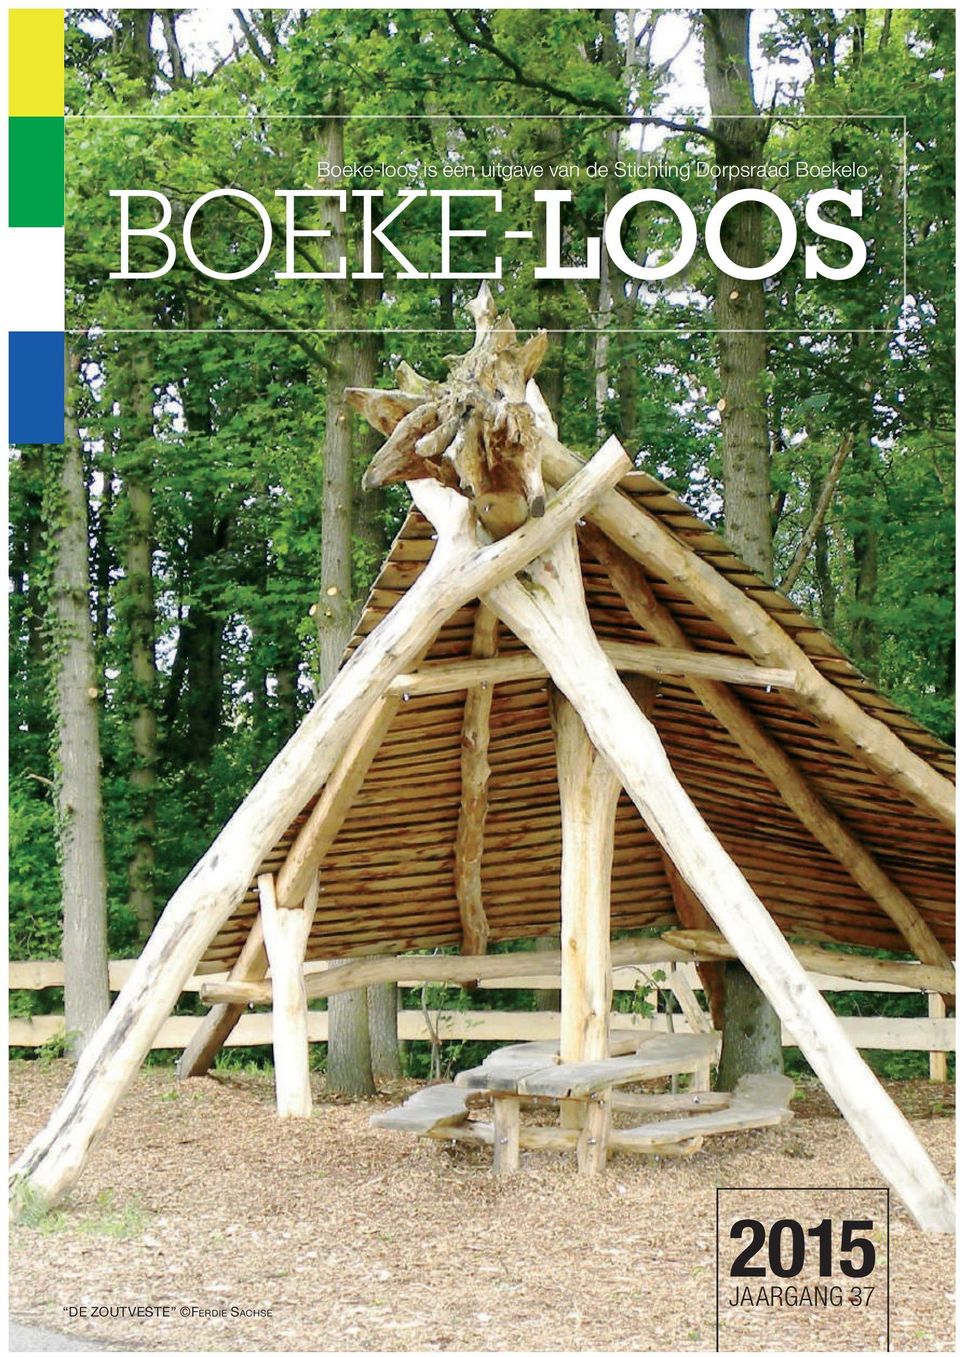 Boekelo BOEKE-LOOS DE